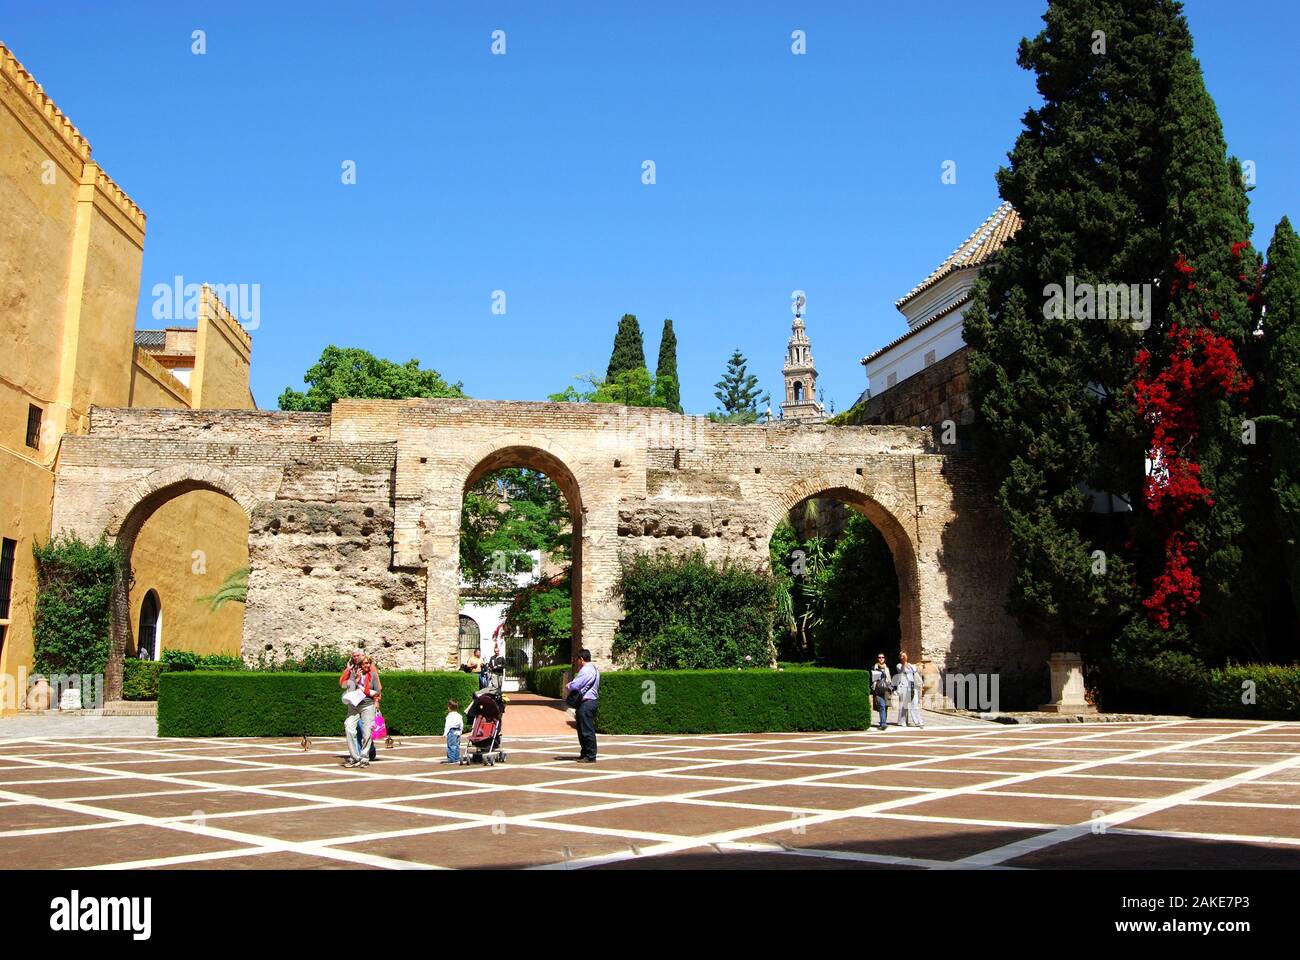 Patio de la Monteria im Schloss der Könige mit der Giralda Turm an der Rückseite, Sevilla, Sevilla Provinz, Andalusien, Spanien. Stockfoto